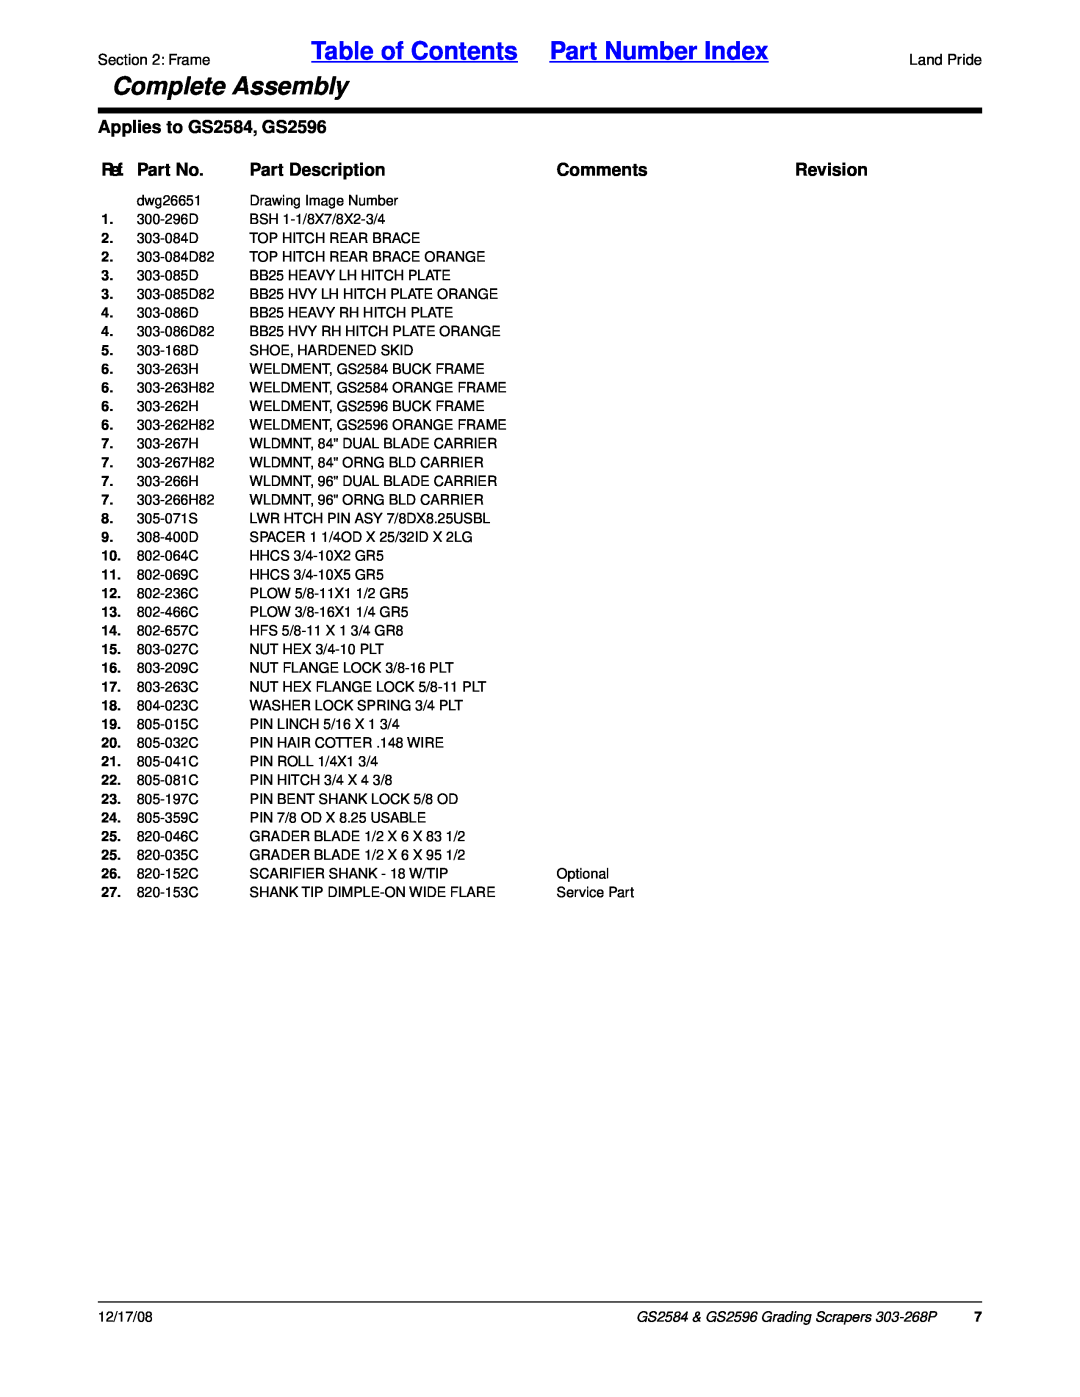 Land Pride GS2584, GS2596 manual Ref. Part No, Part Description, Comments, Revision, Table of Contents Part Number Index 